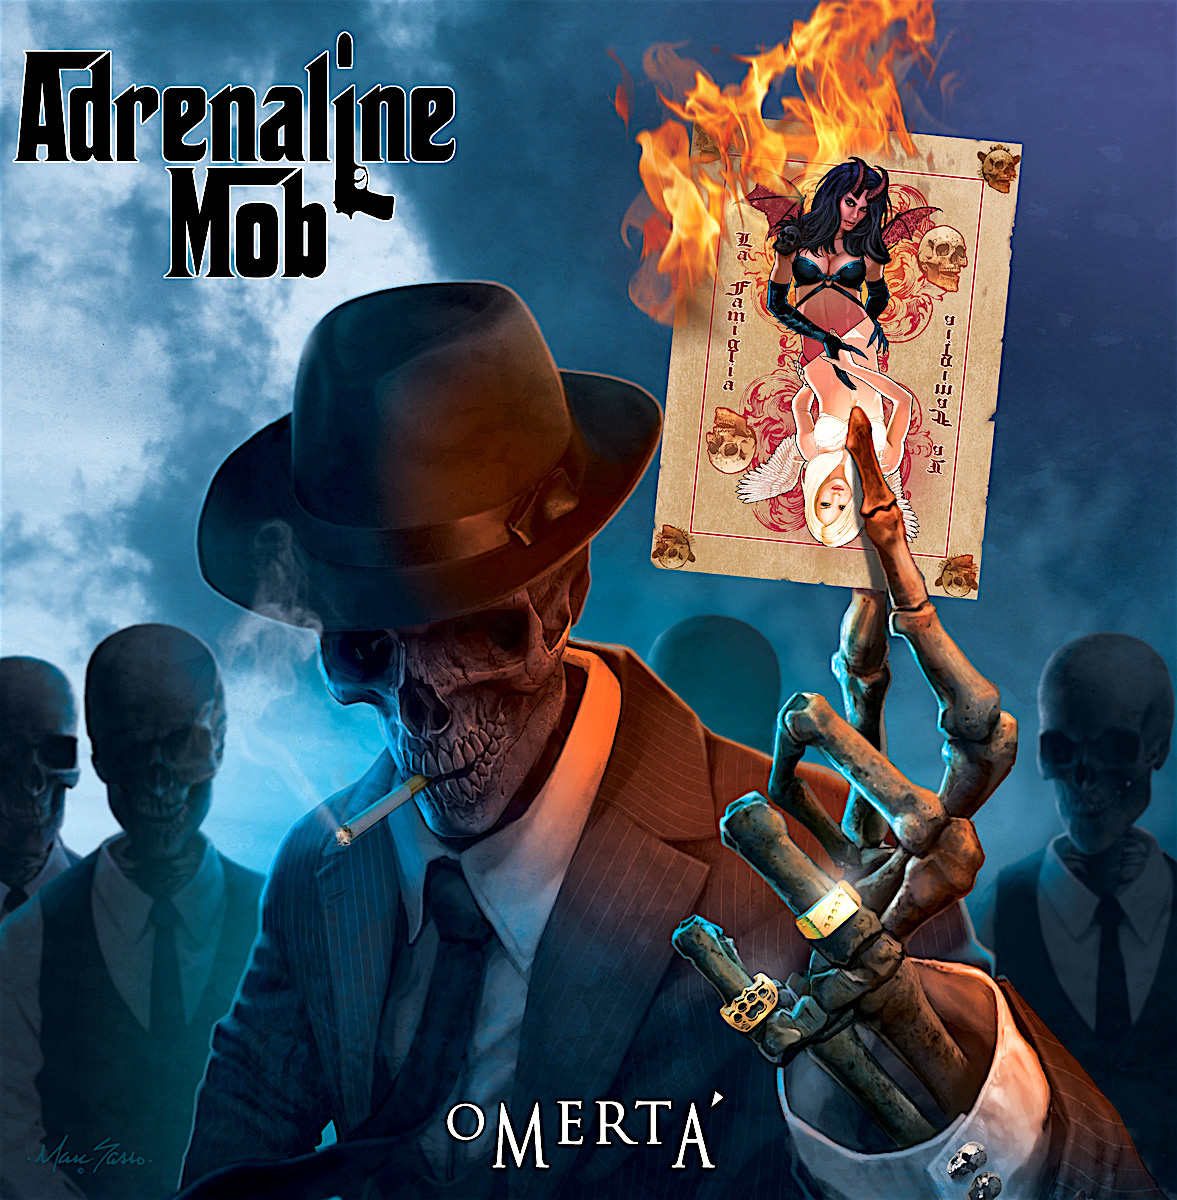 ADRENALINE MOB - Omertá cover 